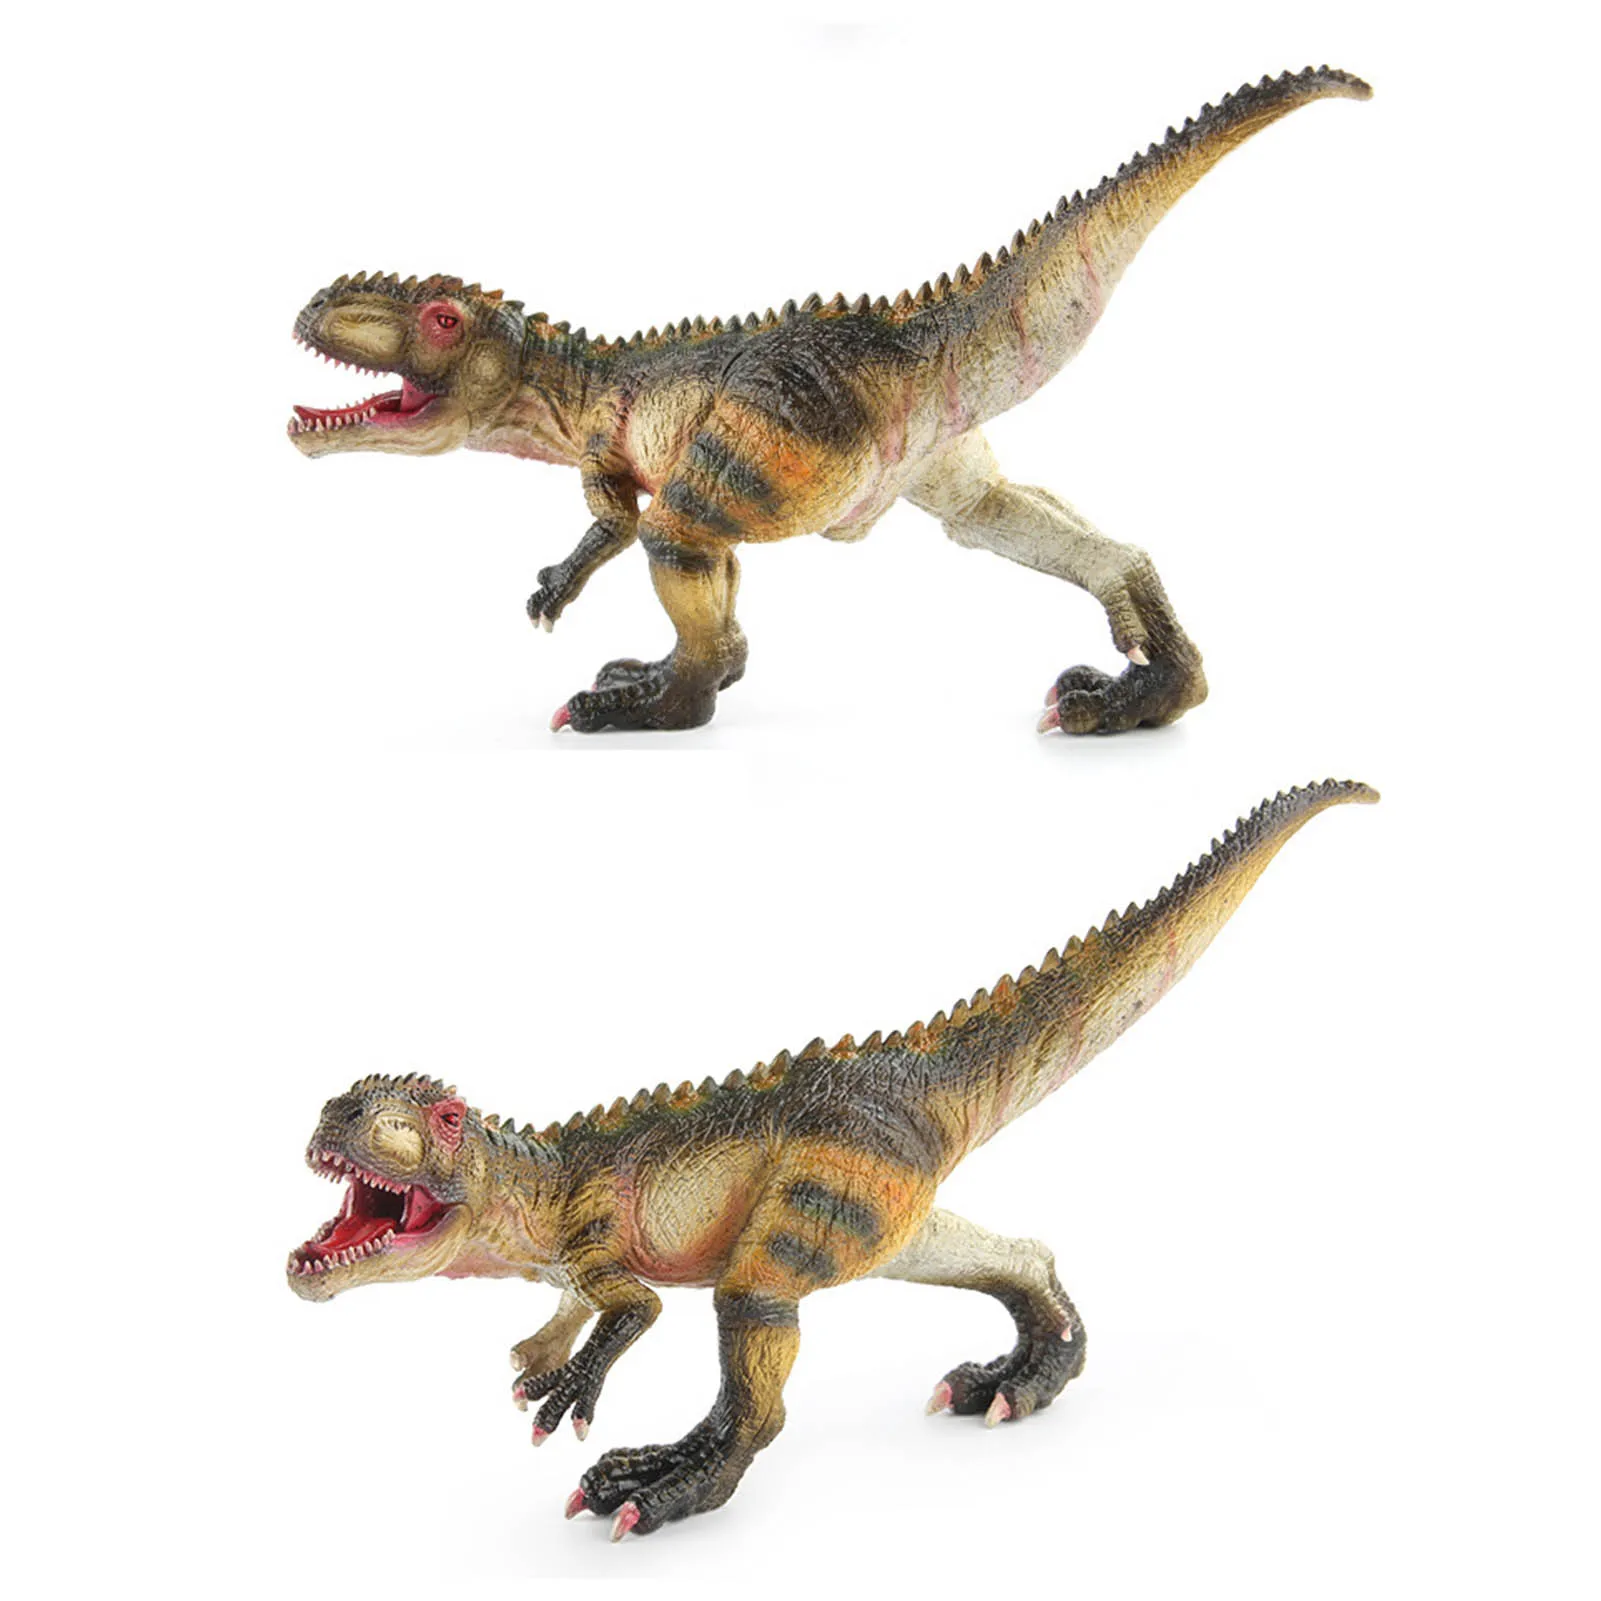 

Фигурка динозавра, Игрушечная модель доисторического животного, фигурка с подвижным ртом, отличный праздничный подарок для детей, мальчико...